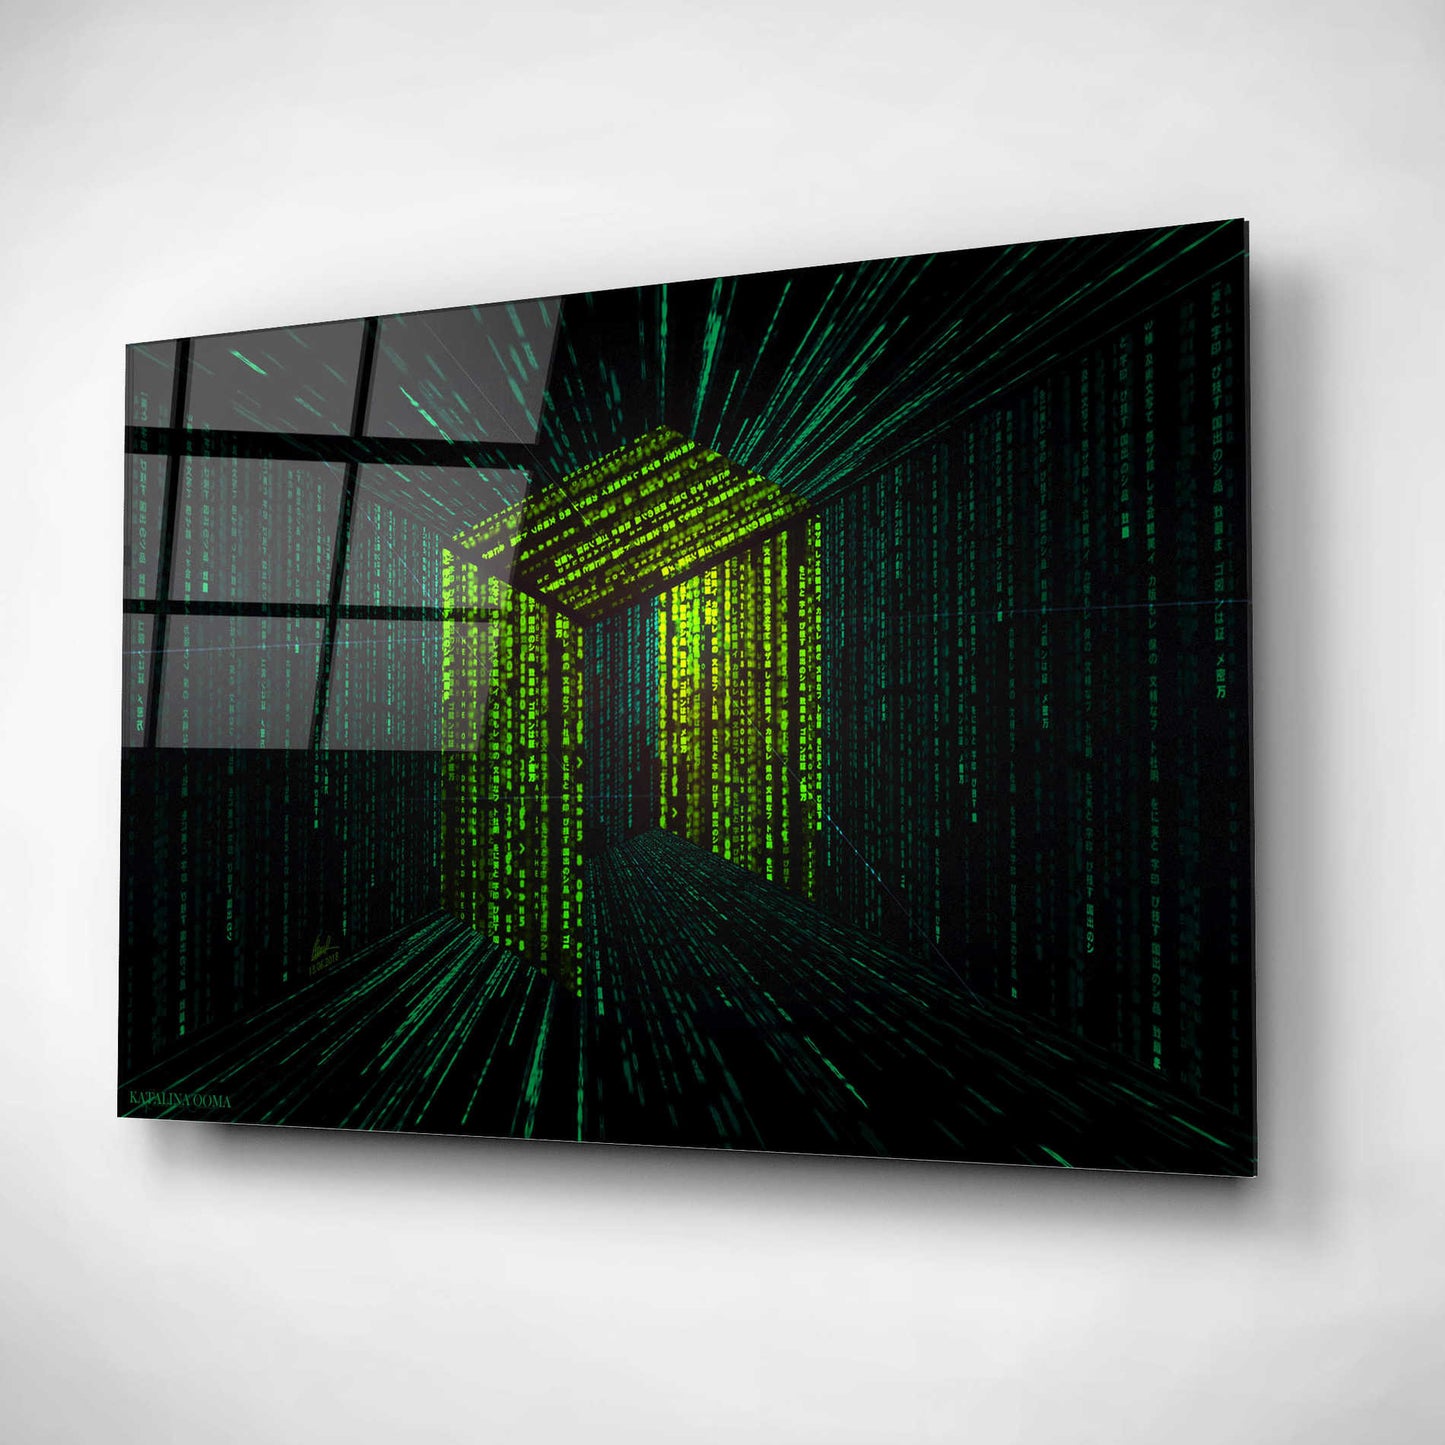 Epic Art 'Digital Rain Neo Crypto' by Katalina, Acrylic Glass Wall Art,16x12